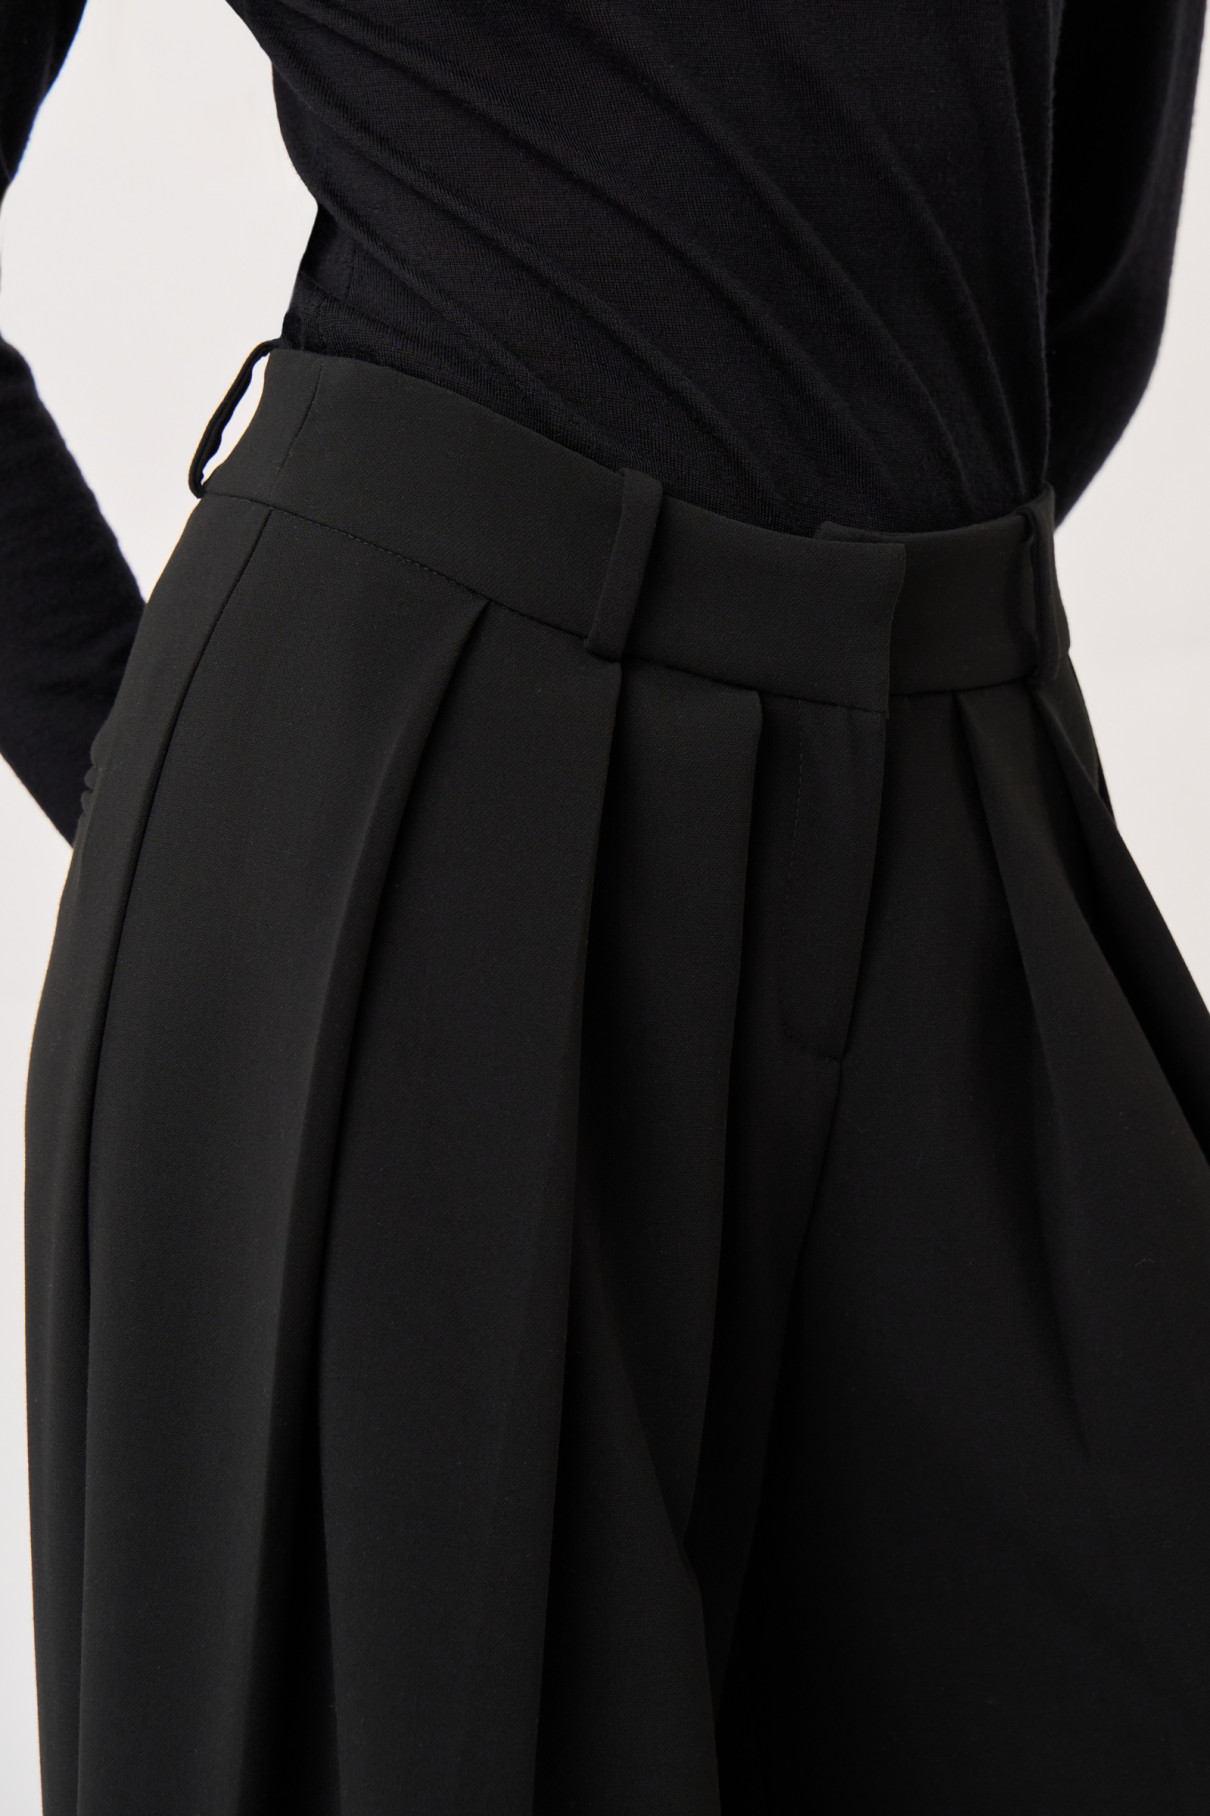 Черные брюки со складками , арт. FR21-ЧО-4-чр-4 купить в интернет-магазине